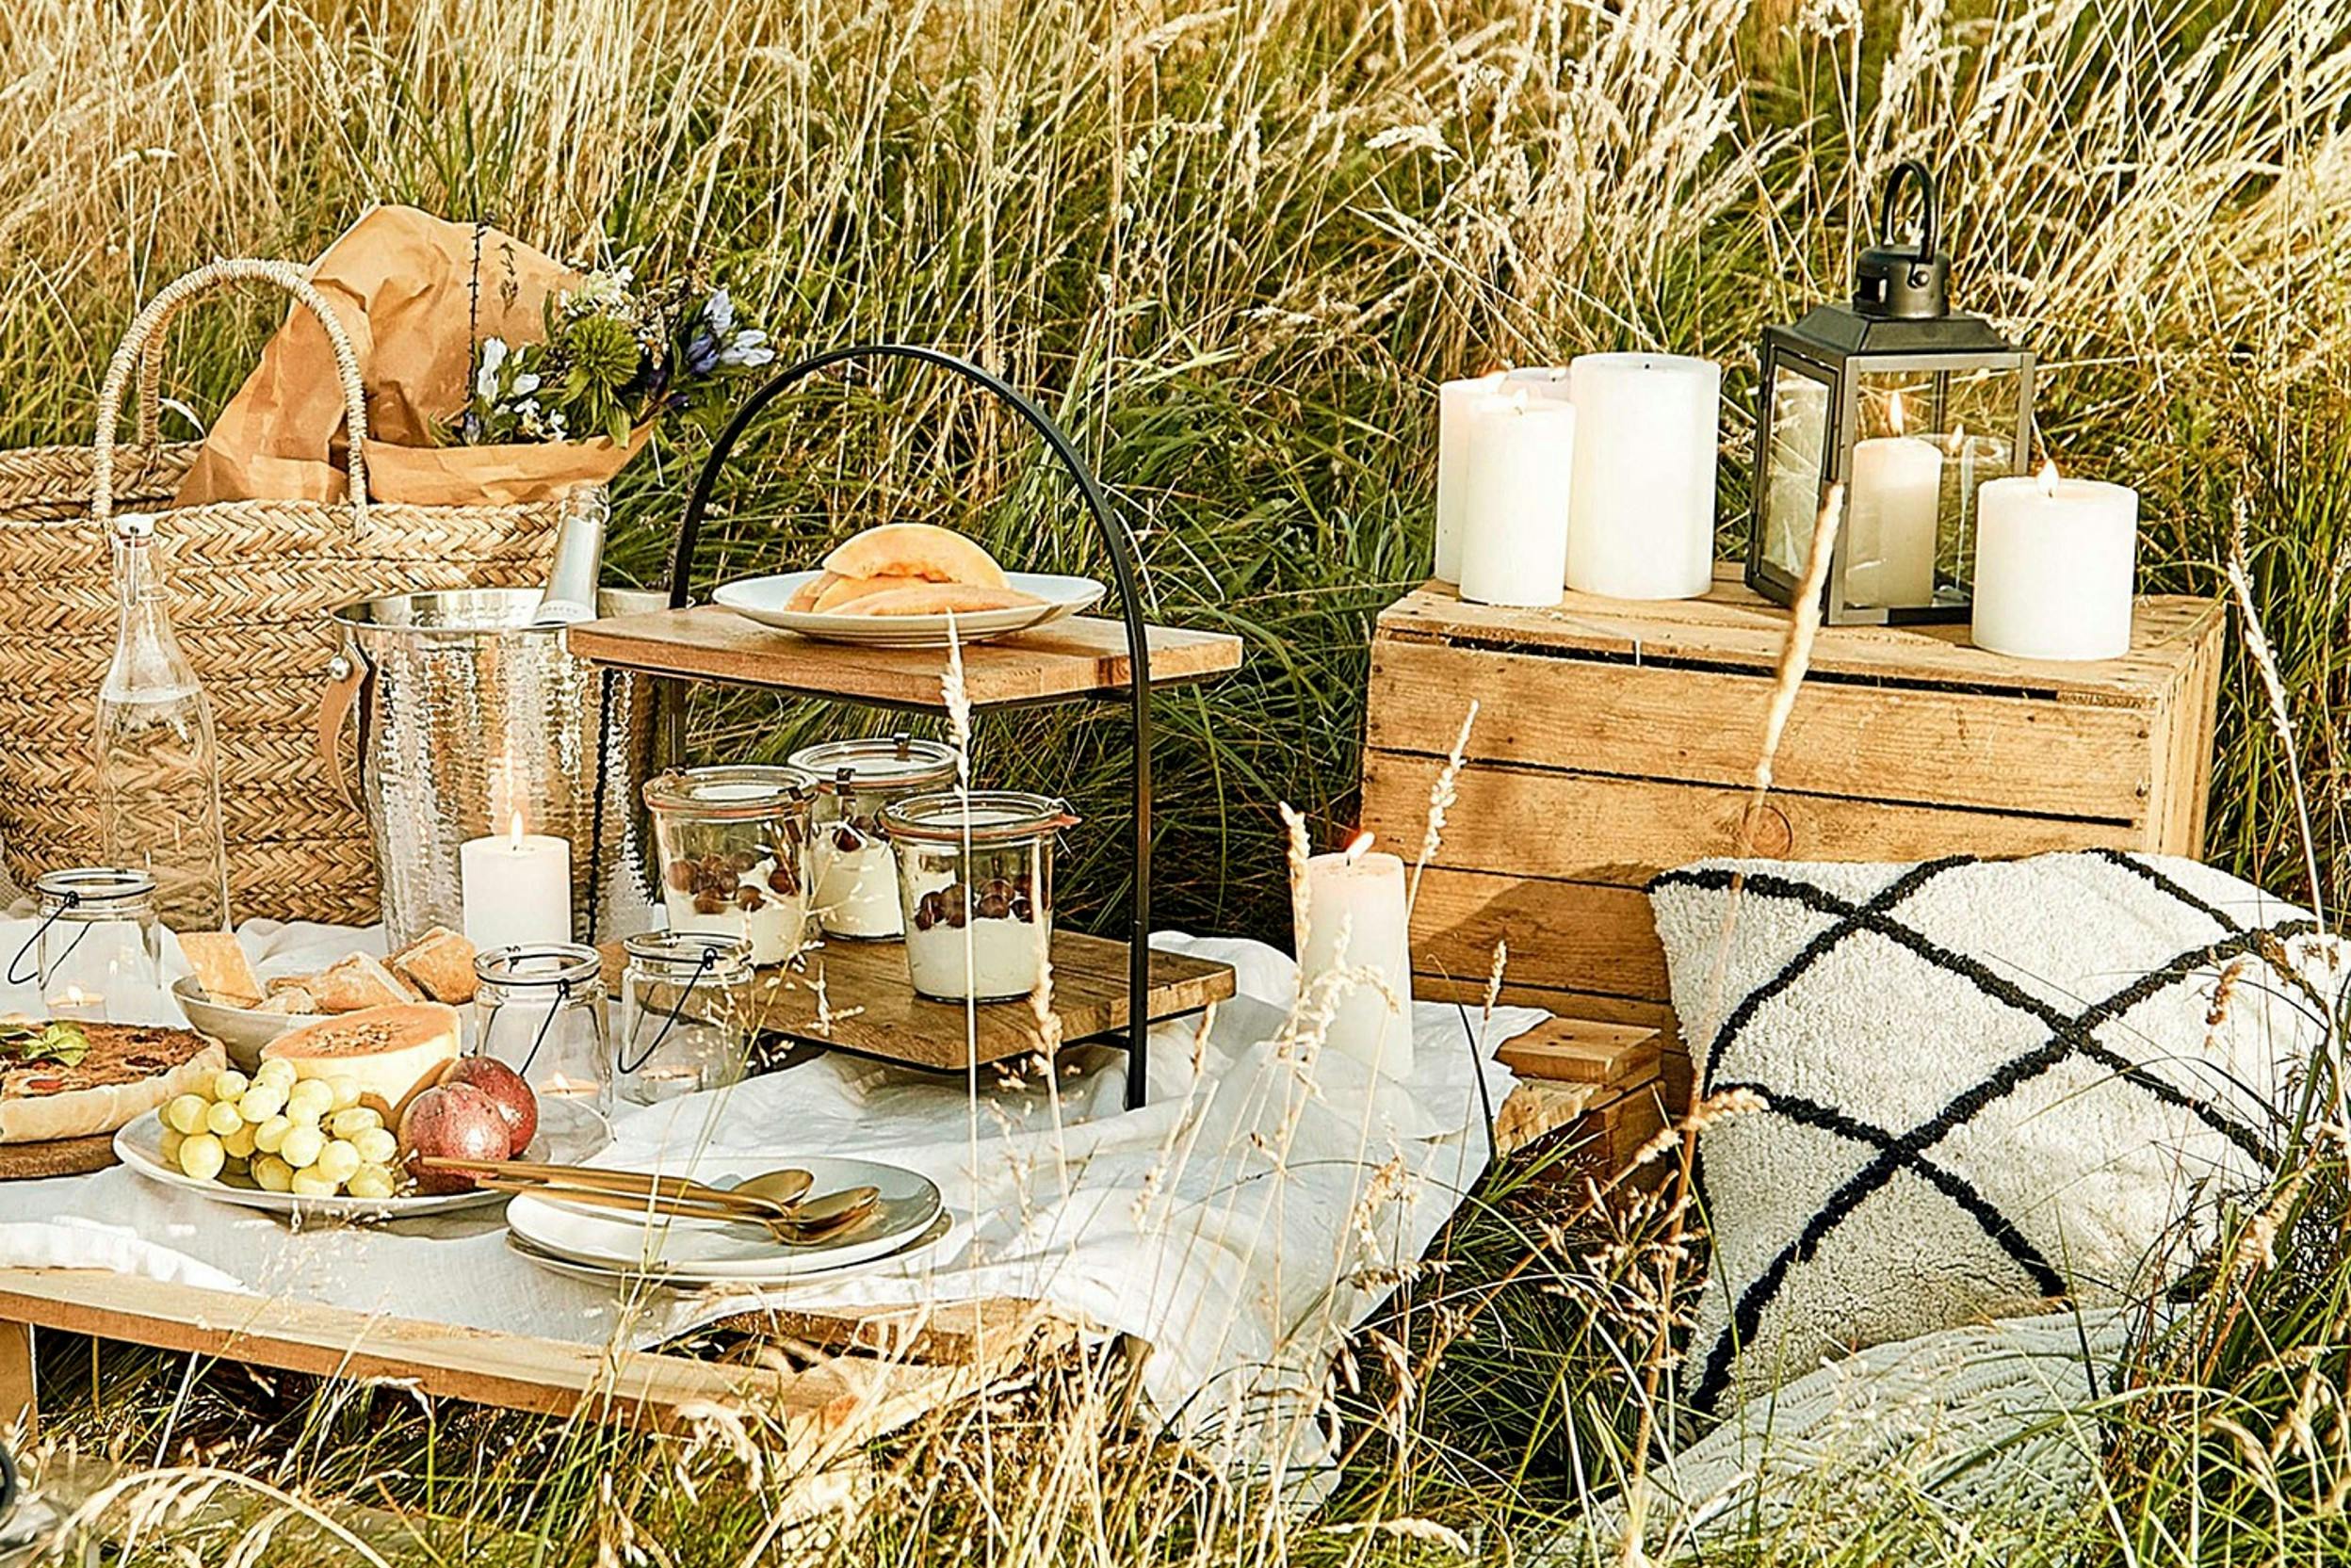 Rustikales Picknick-Arrangement im freien Feld mit Etagere, Kerzen, Kissen und mehr